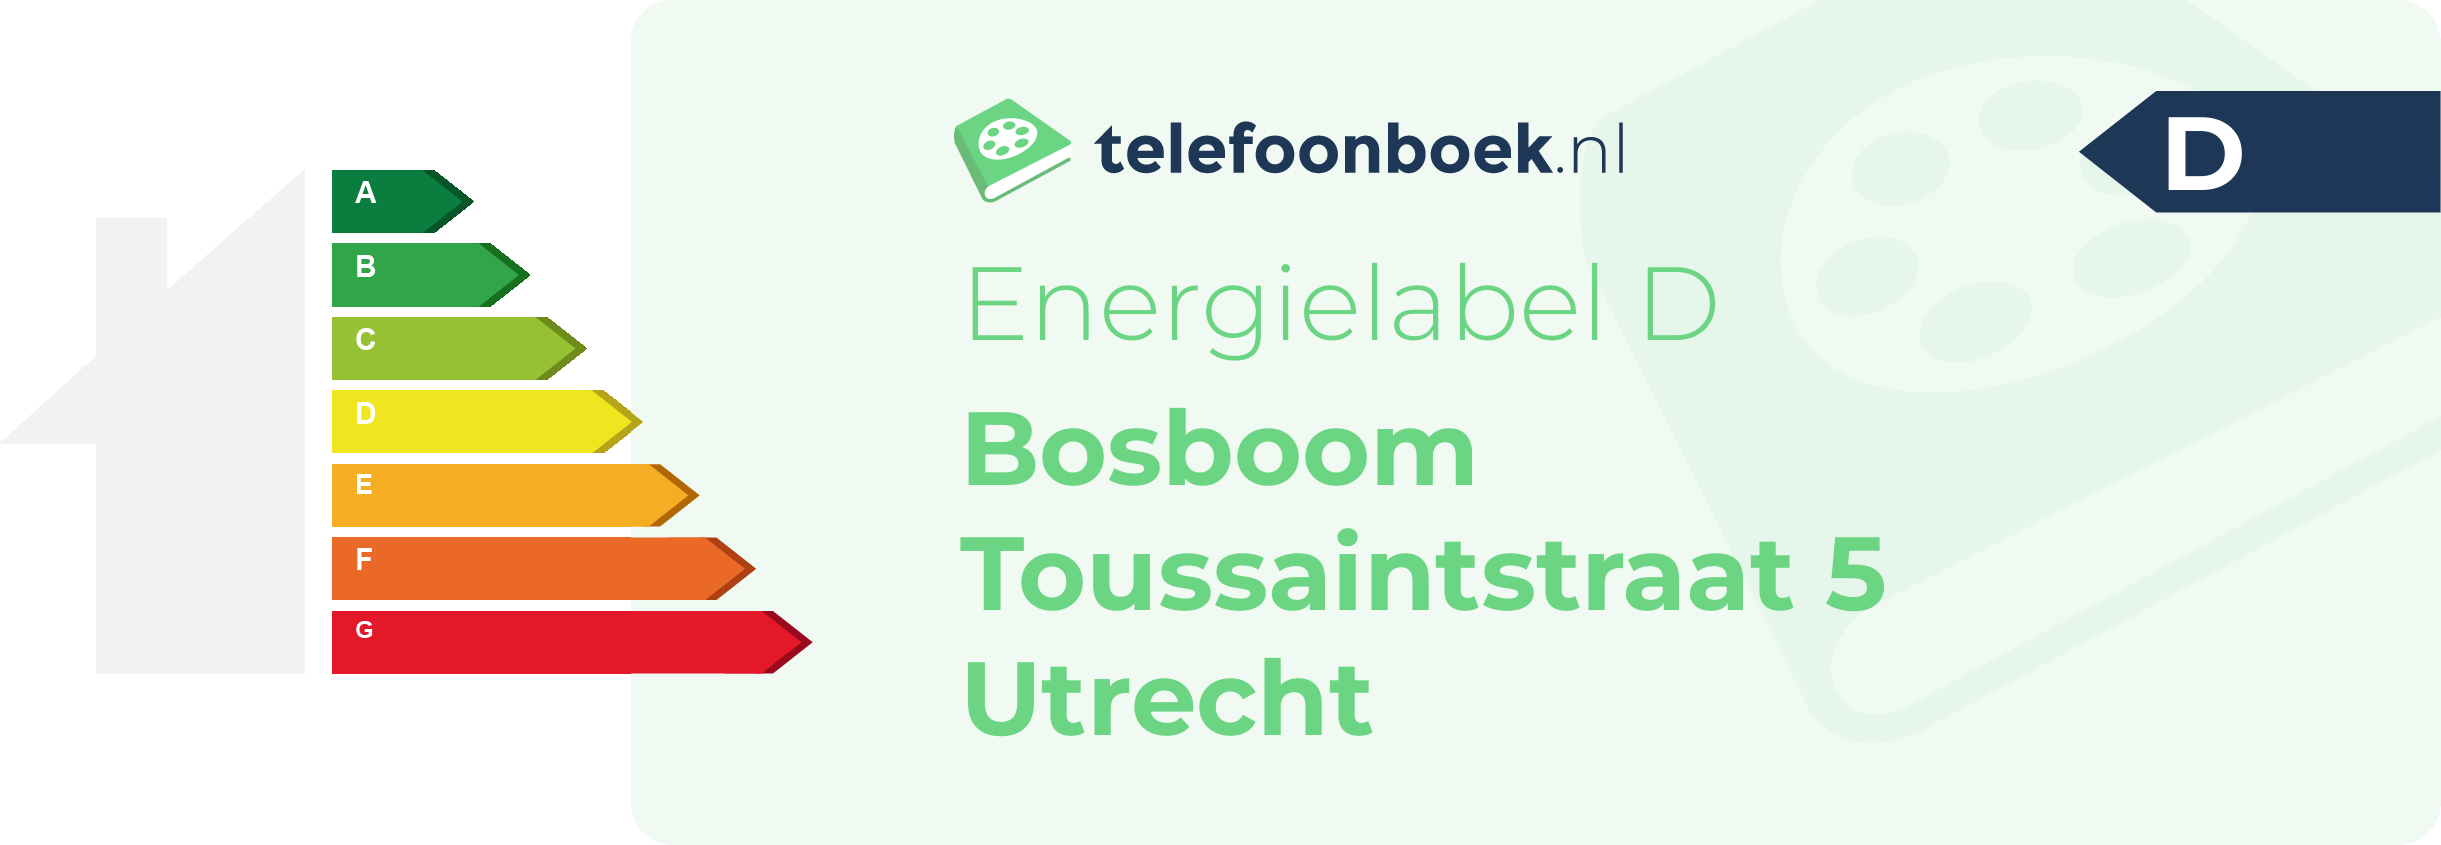 Energielabel Bosboom Toussaintstraat 5 Utrecht